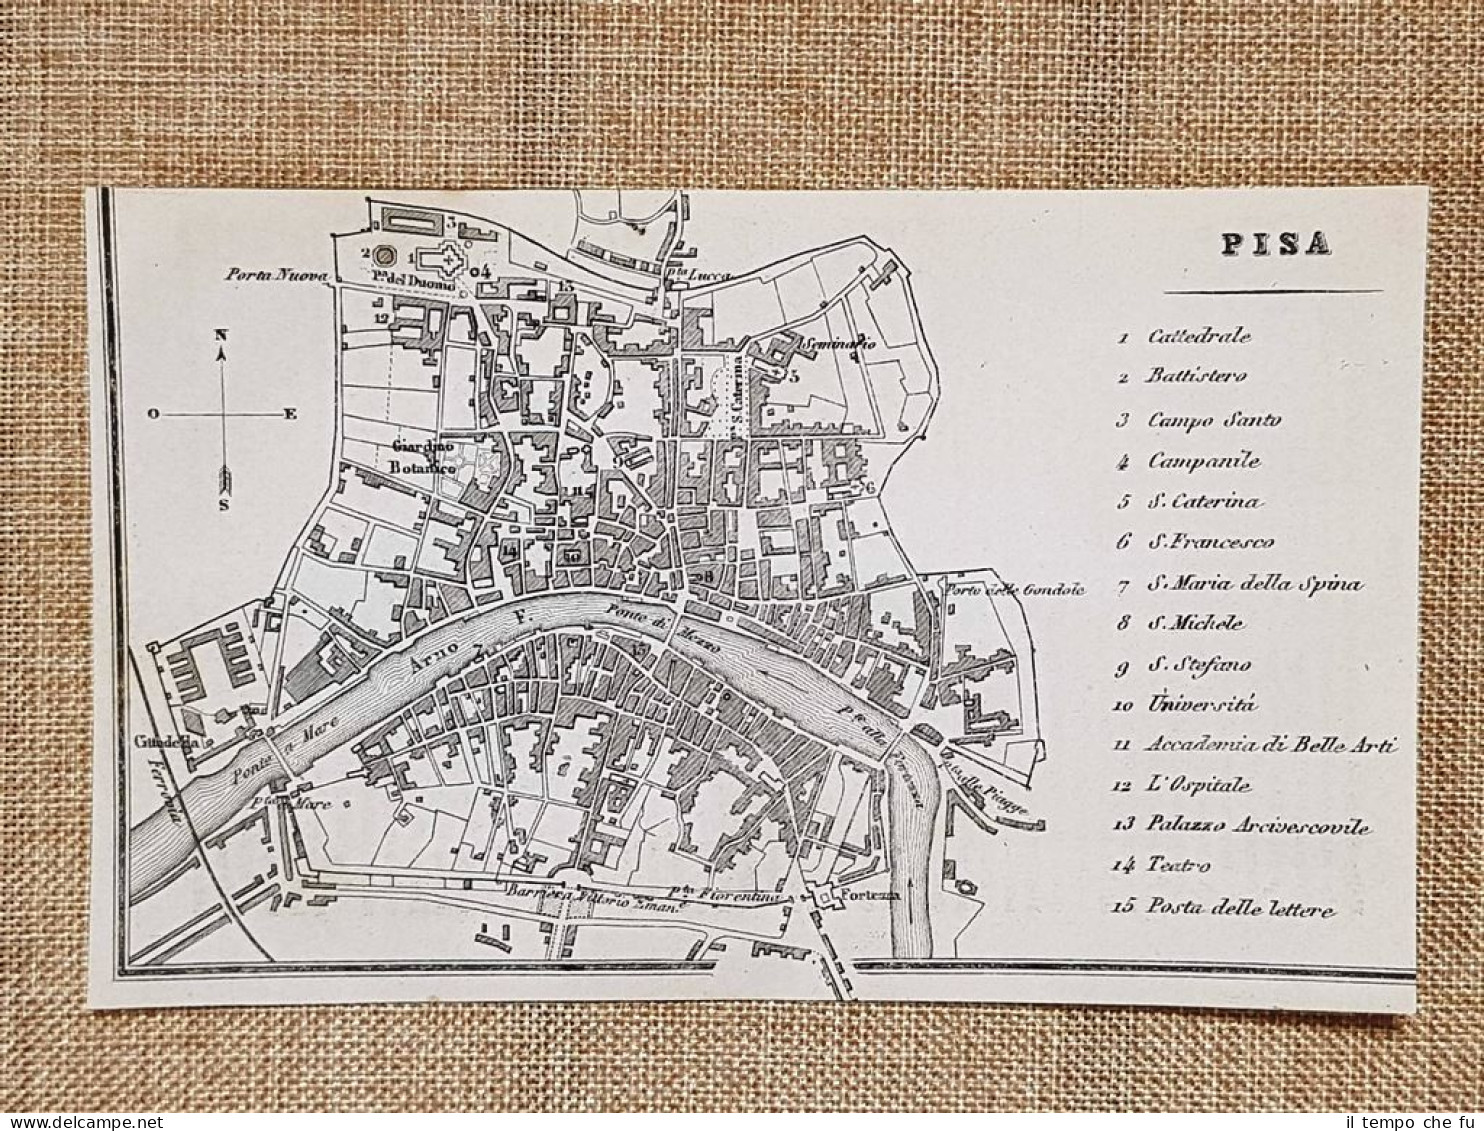 Rara Ed Antica Pianta Topografica Di Pisa Anno 1871 Ferdinando Artaria E Figlio - Carte Geographique